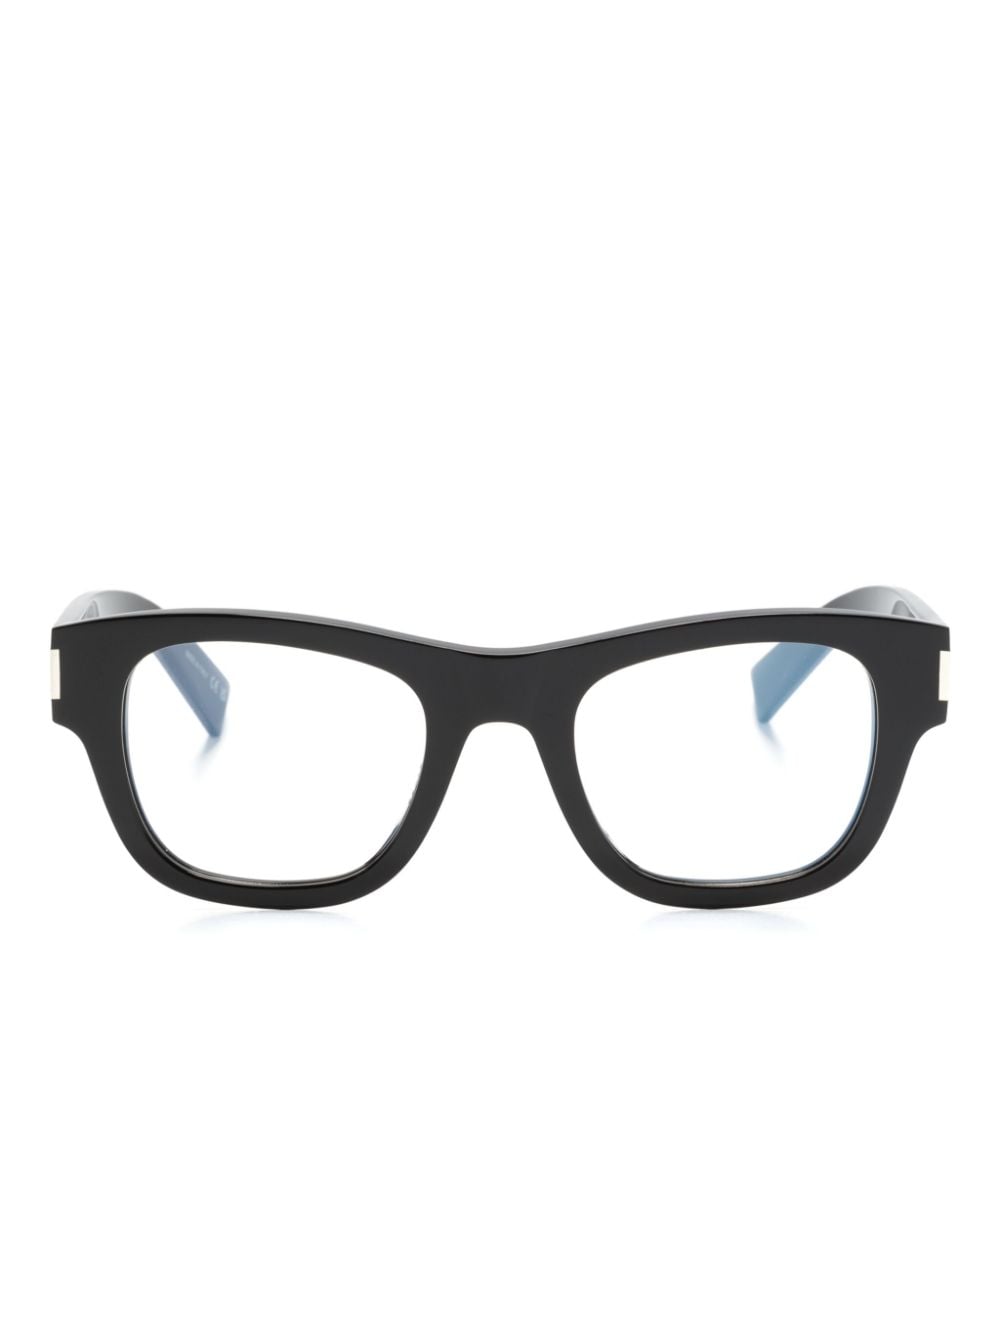 Saint Laurent Eyewear SL698 Brille mit breitem Gestell - Schwarz von Saint Laurent Eyewear